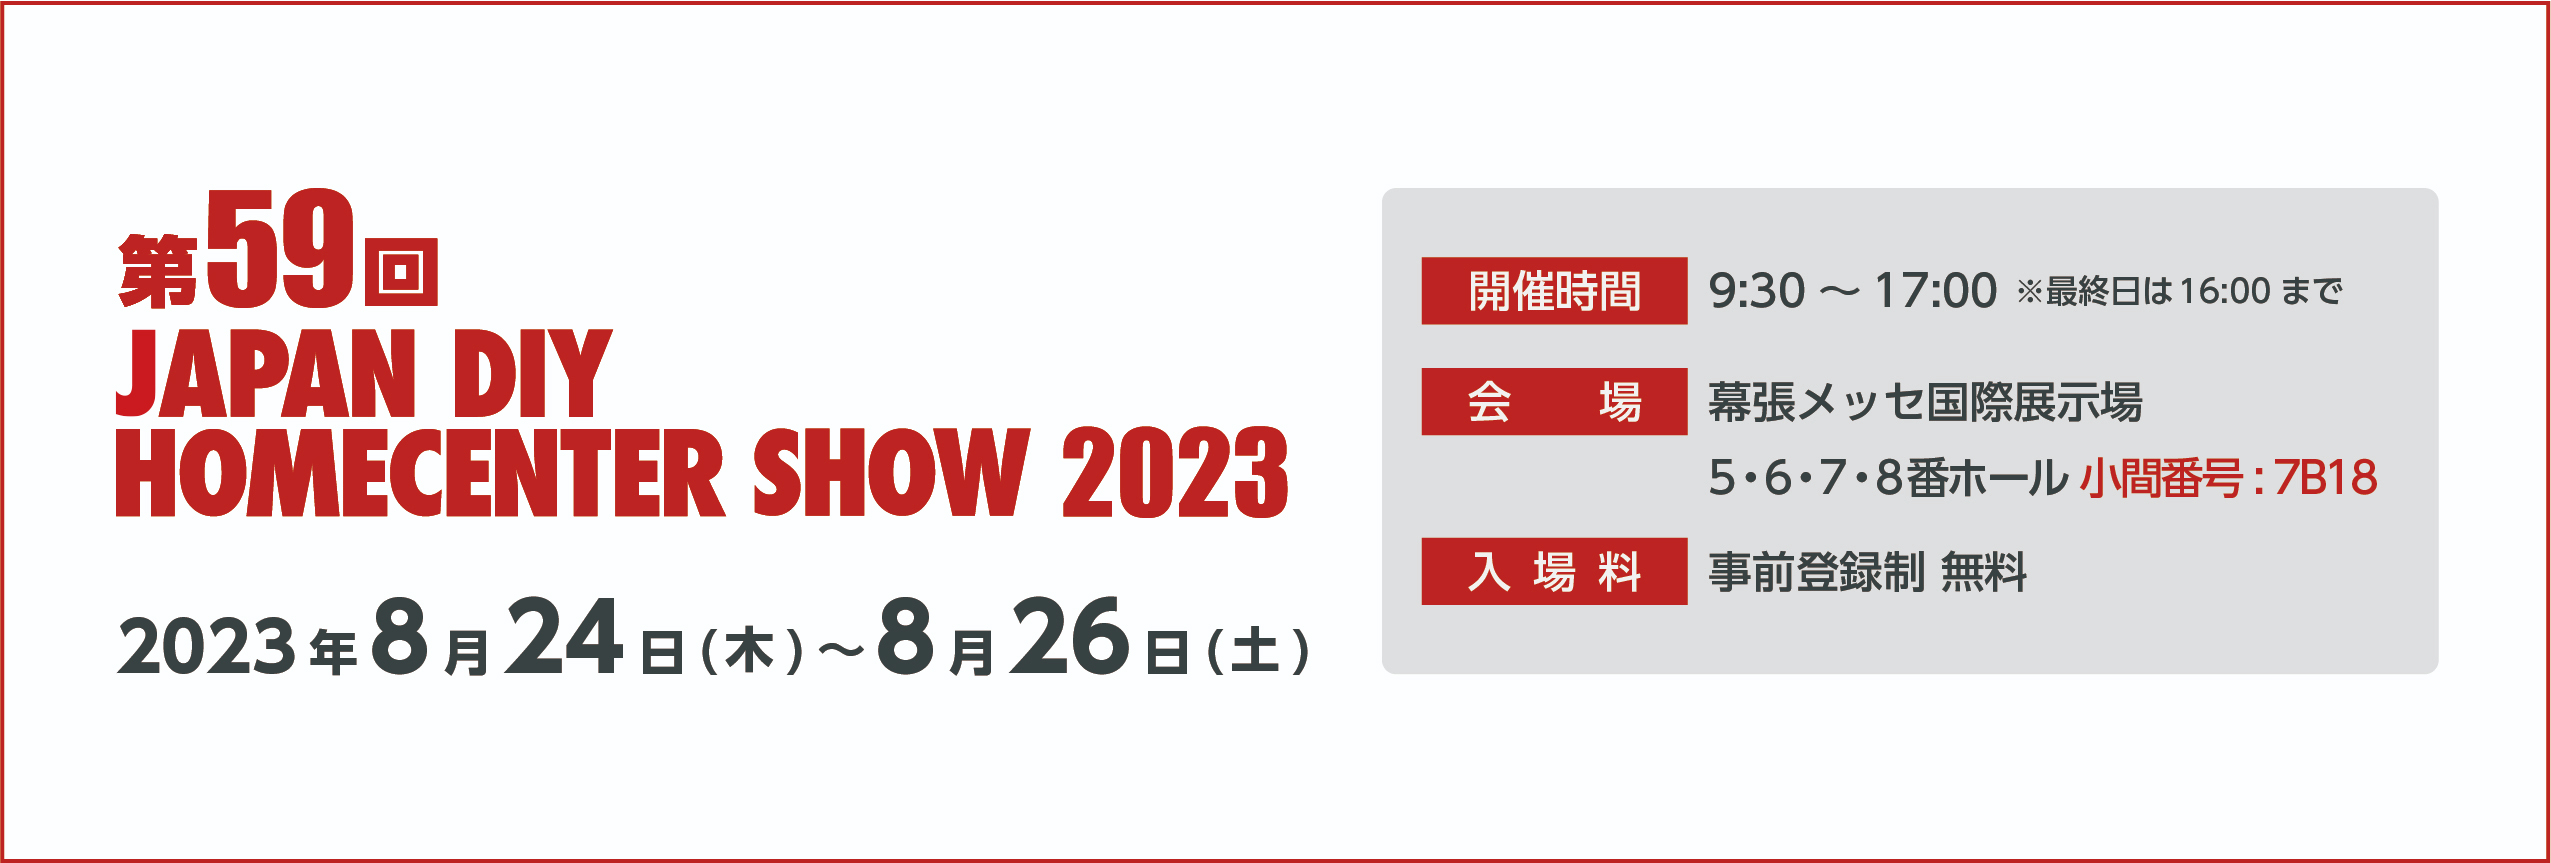 第59回 JAPAN DIY HOMECENTER SHOW 2023